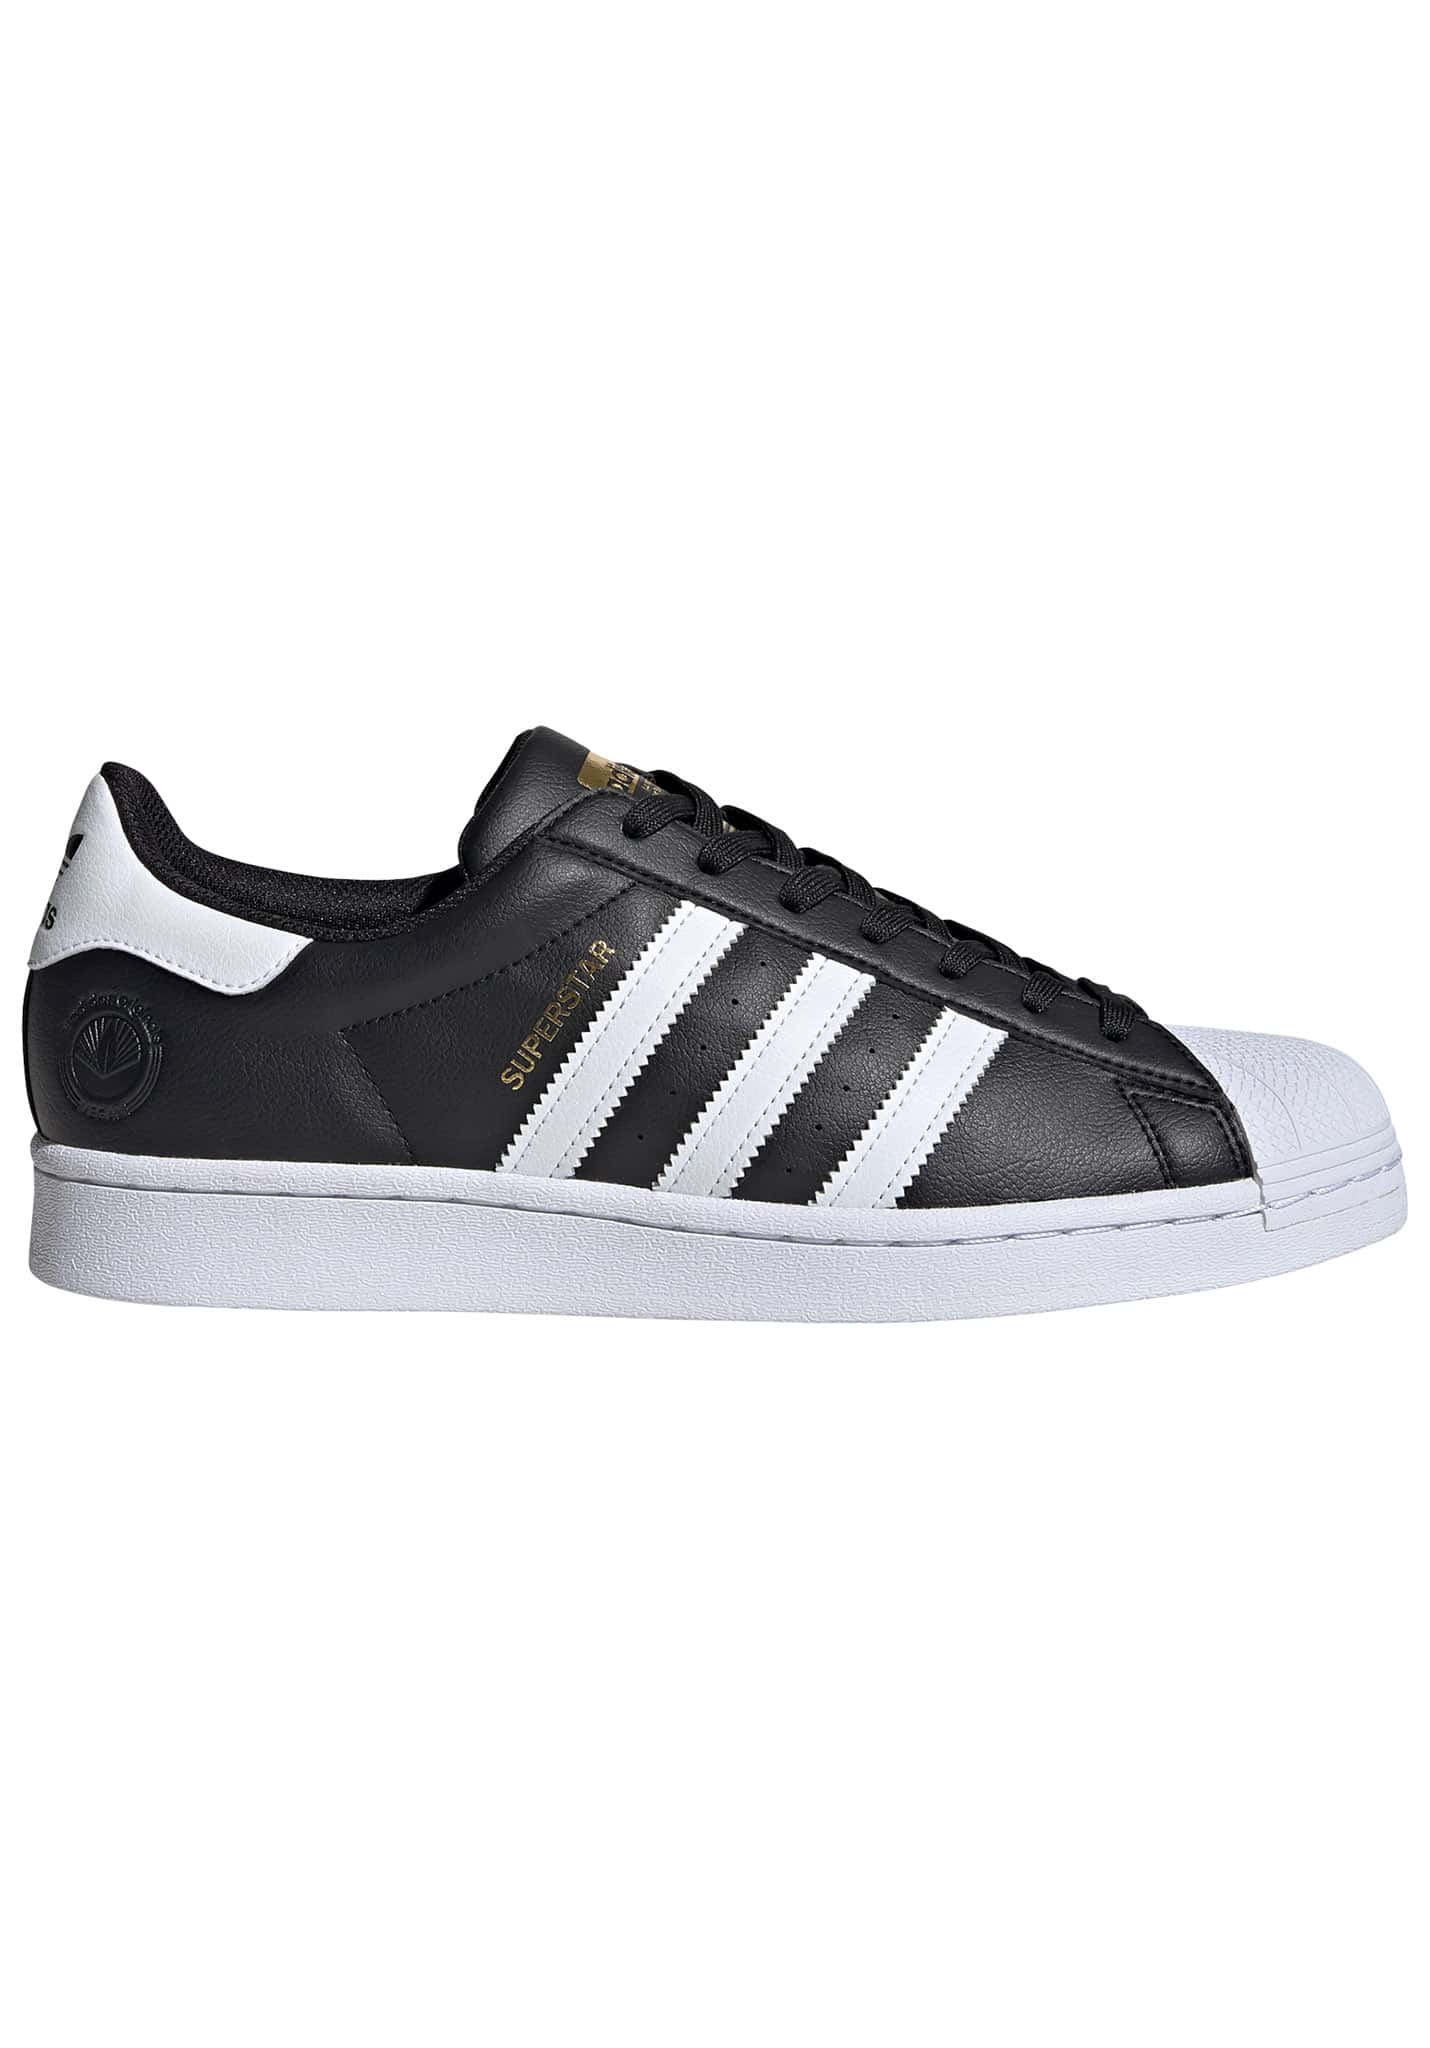 Adidas Originals Superstar Vegan Sneaker schwarz weiß 47 1/3